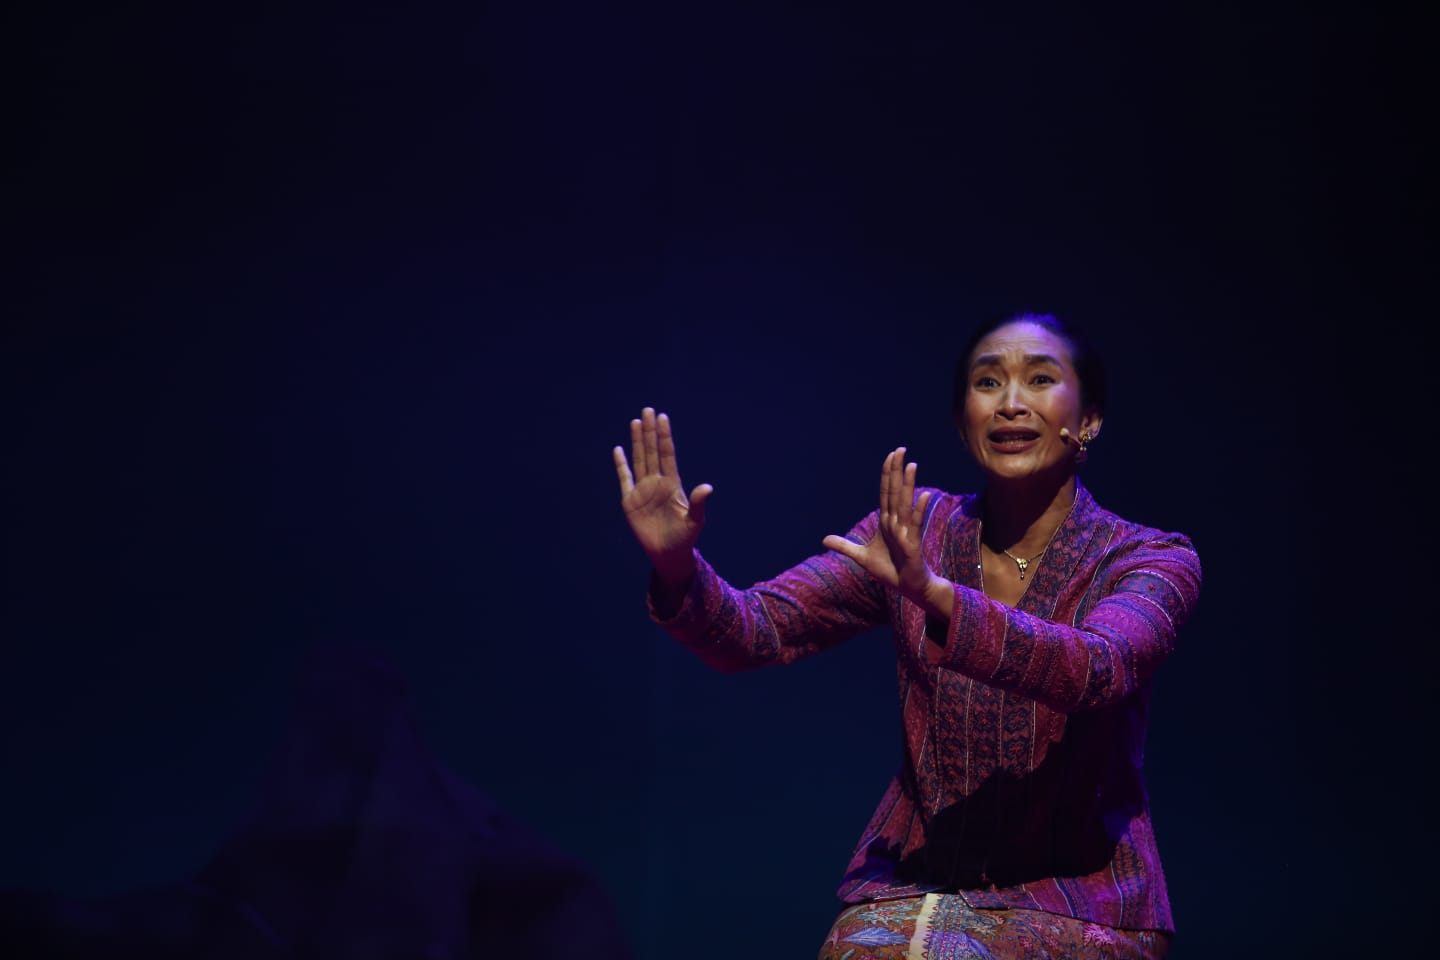 Tegak Setelah Ombak, Teater Monolog Inggit Berbalut Musik